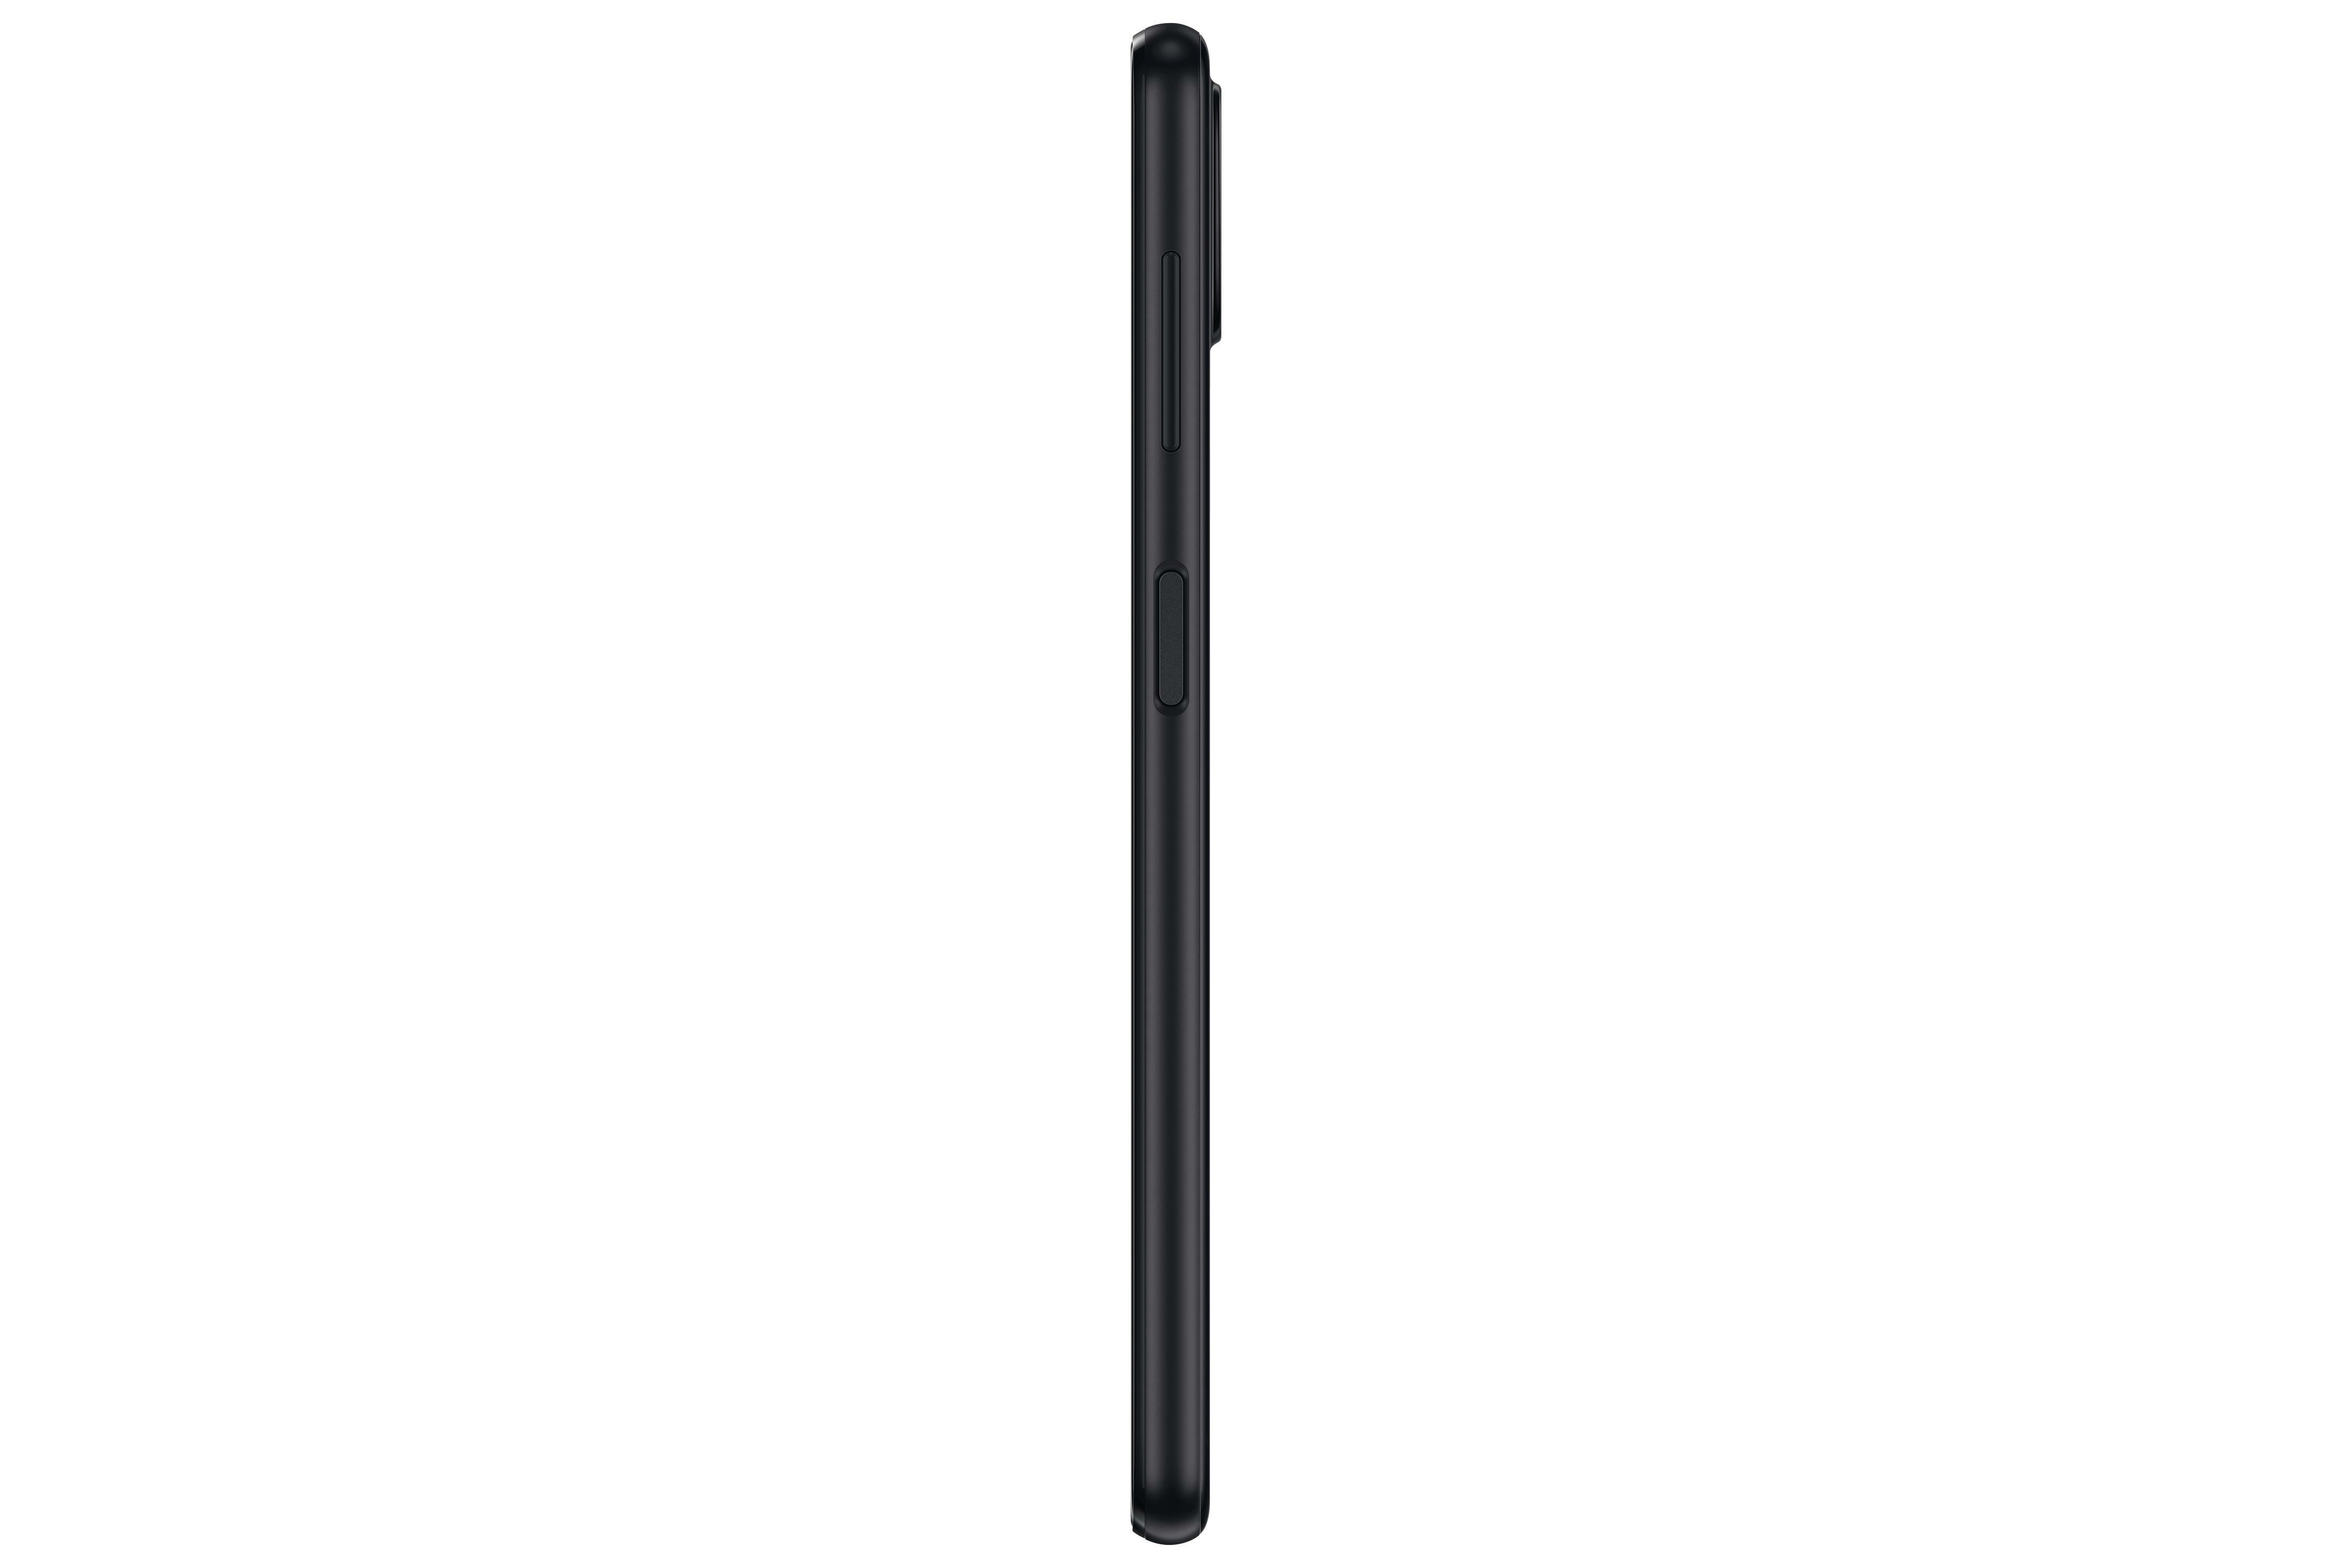 SAMSUNG Galaxy A22 64 Dual SIM Black GB